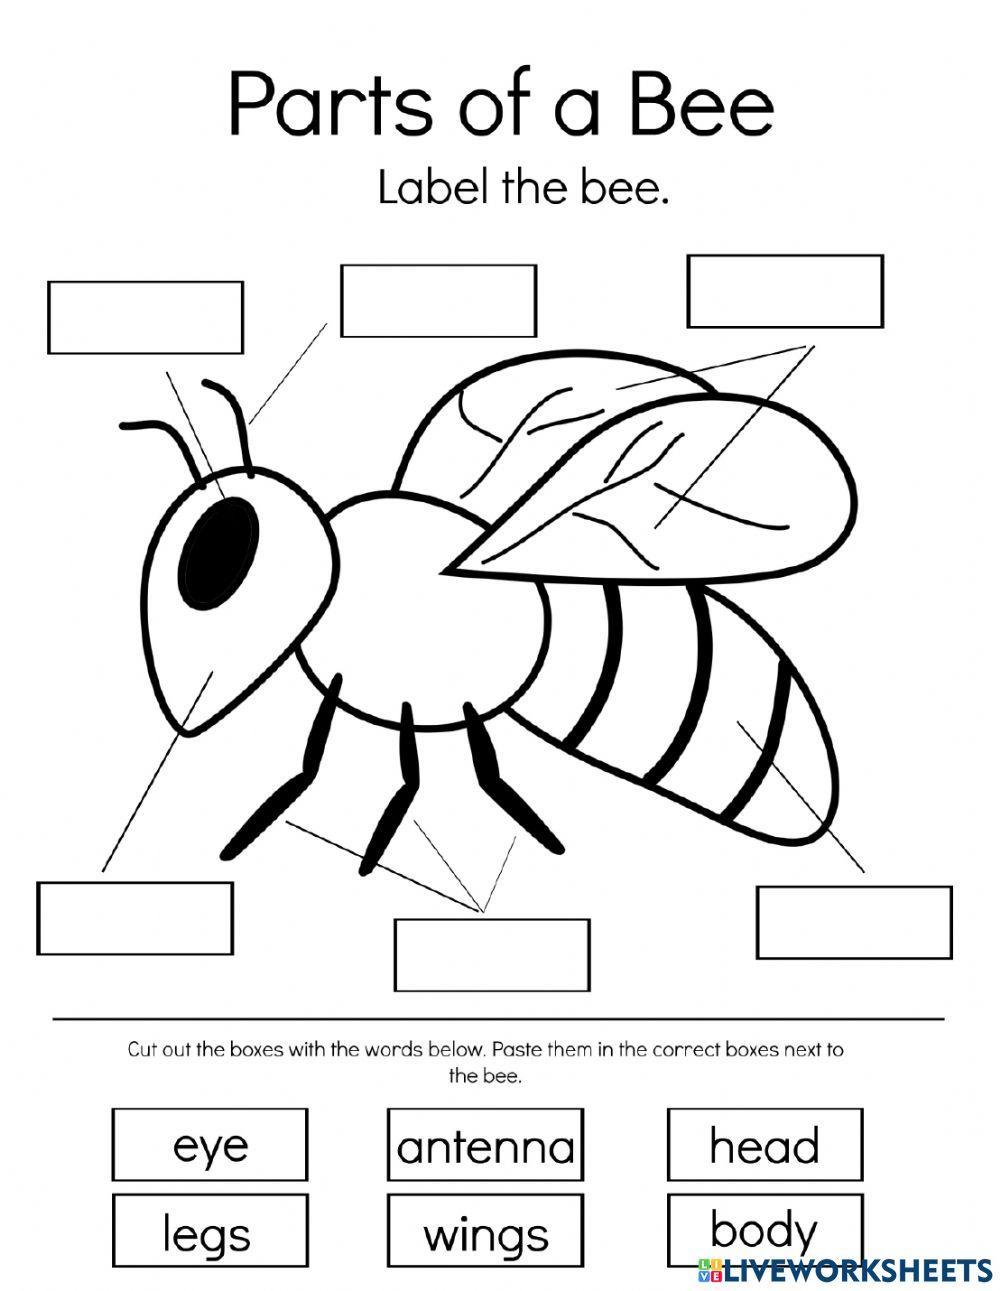 Label the honey bee